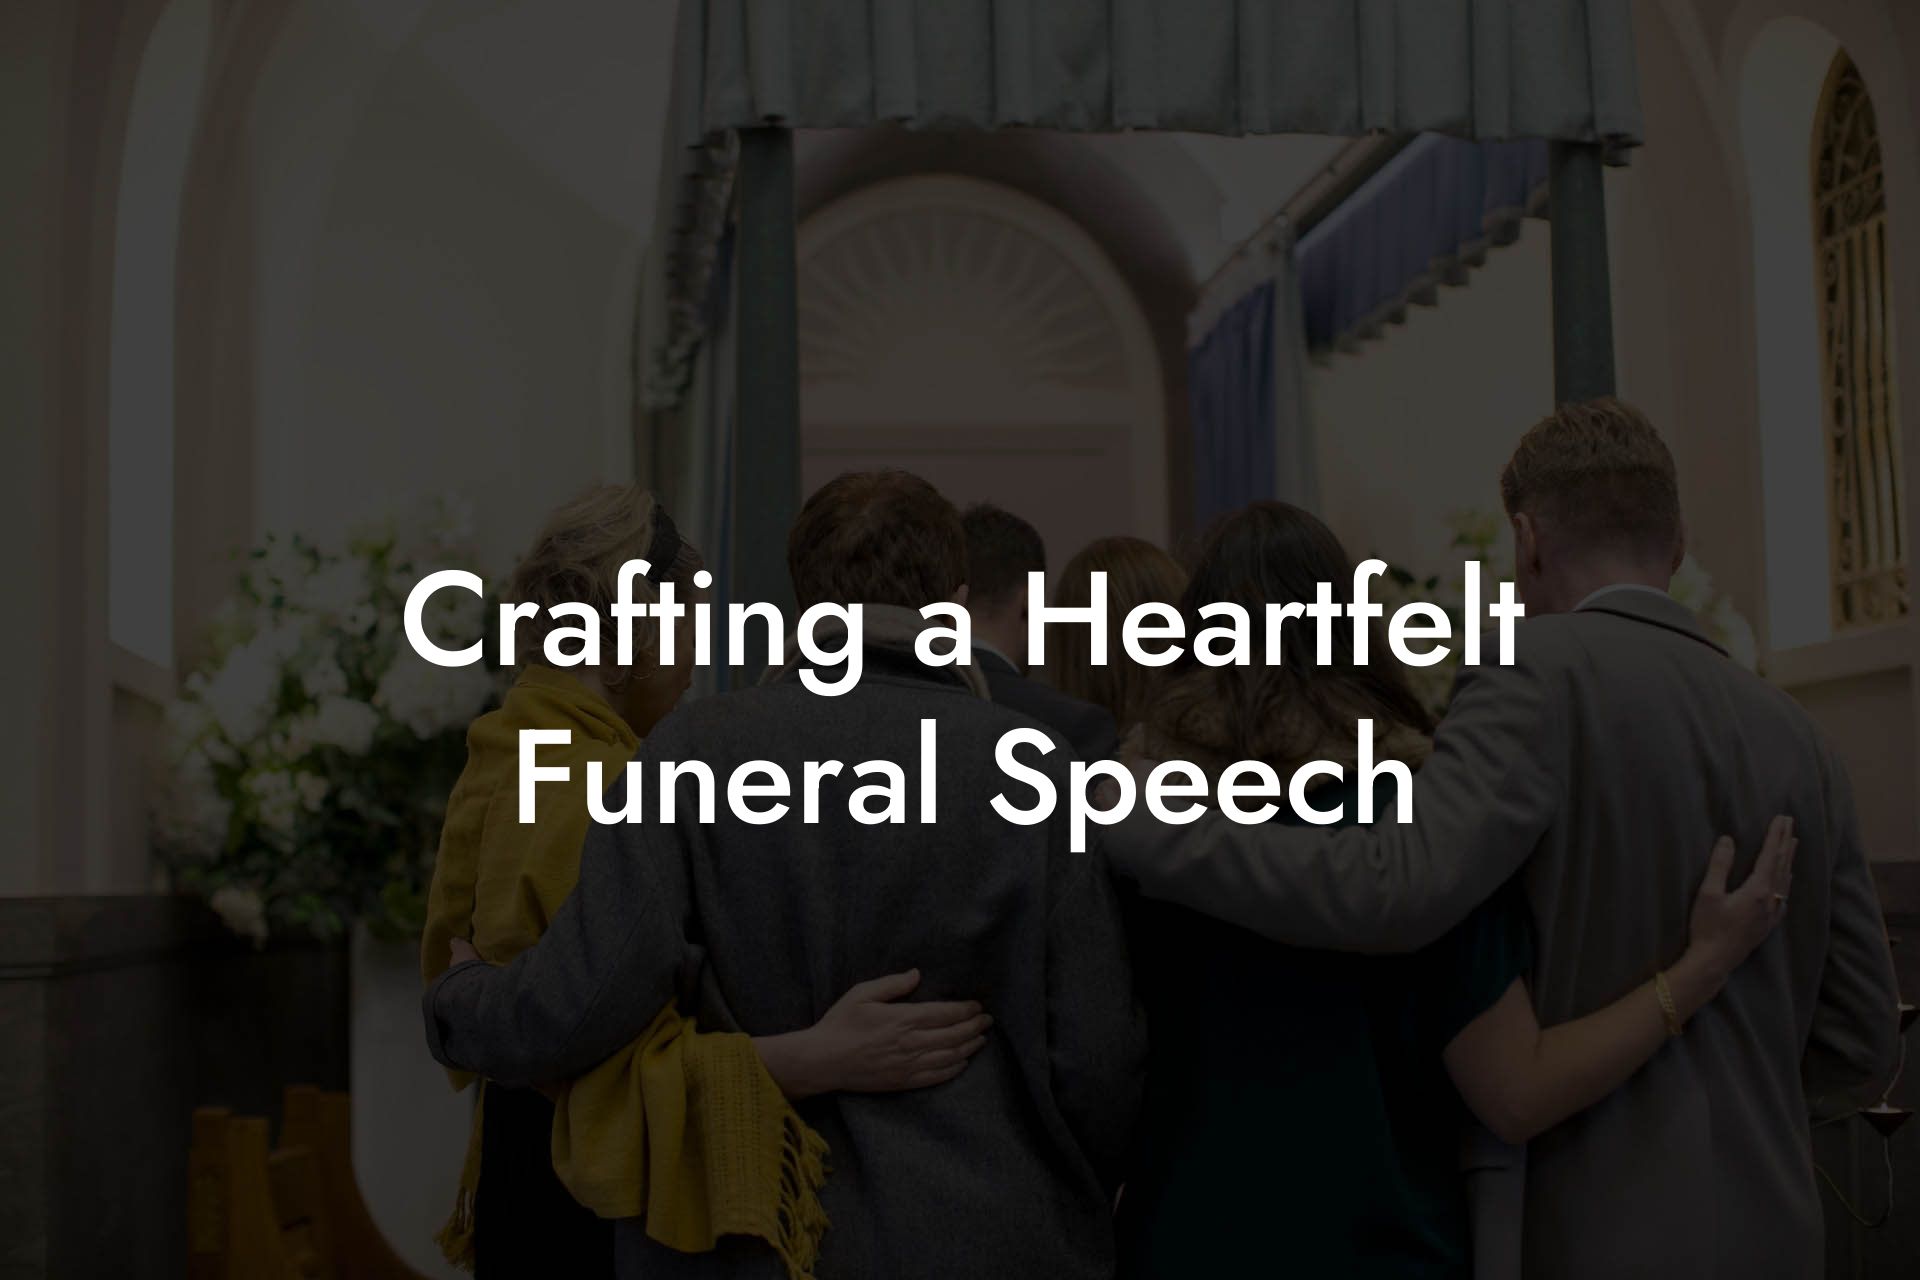 Crafting a Heartfelt Funeral Speech